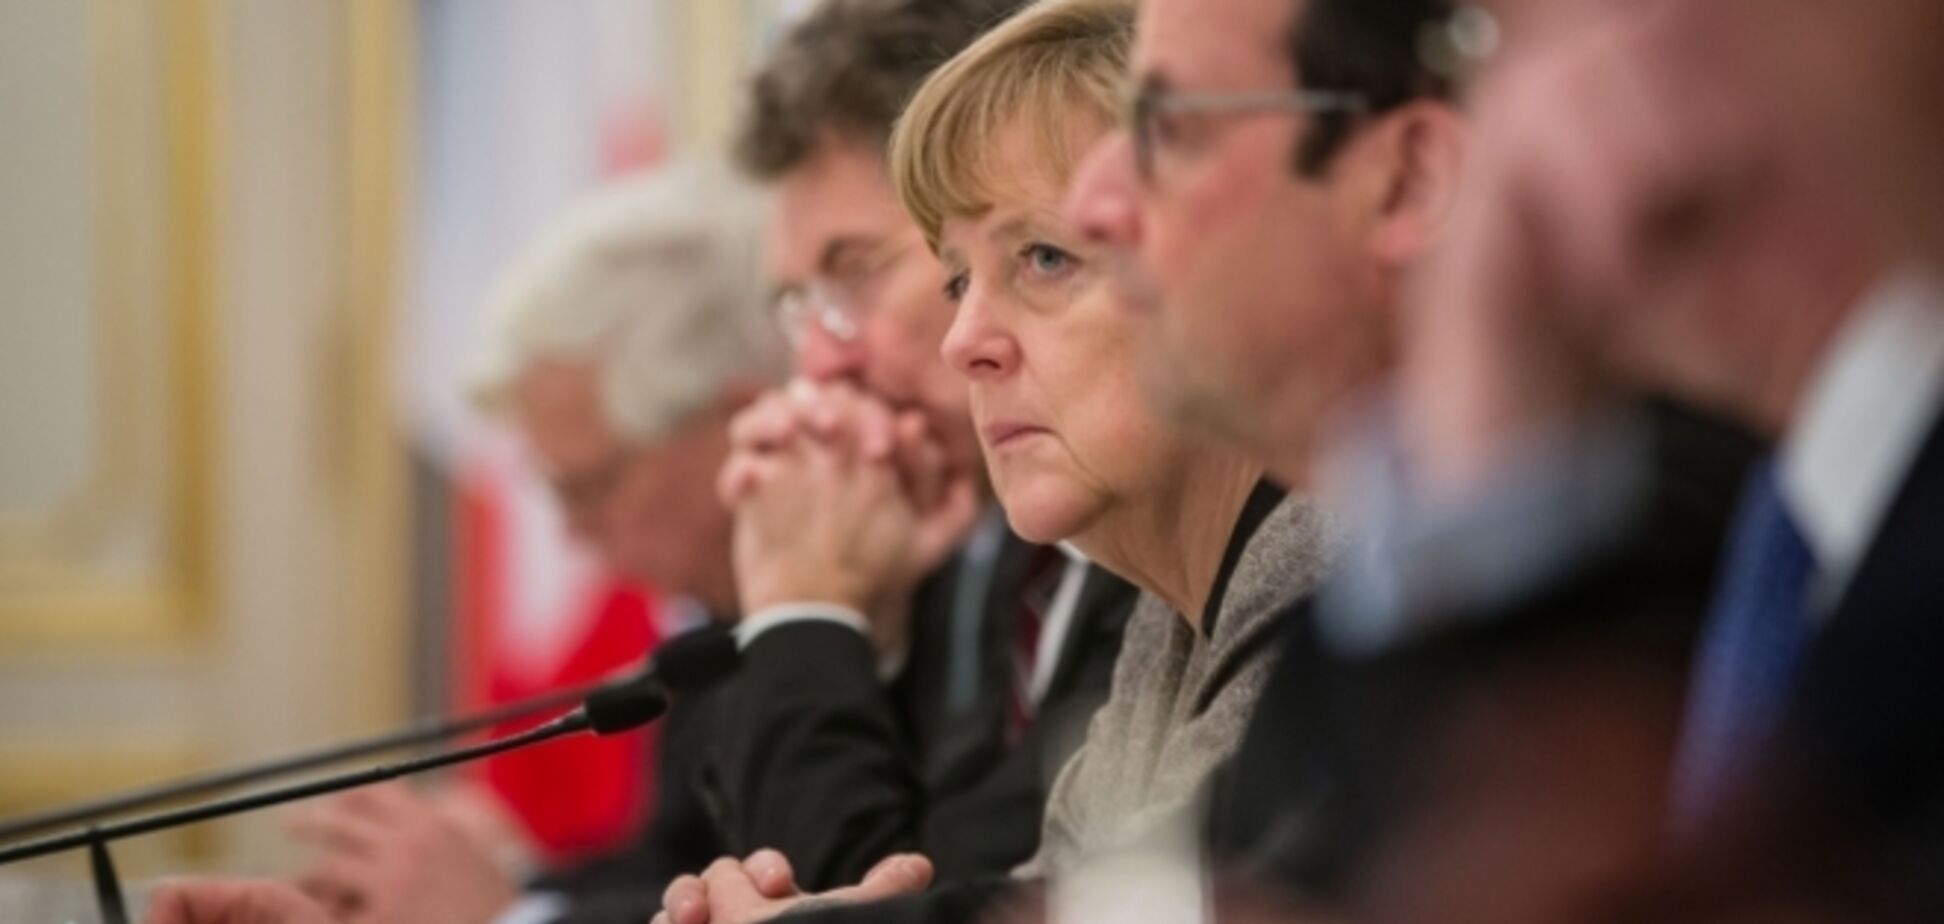 Меркель и Олланд построят переговоры с Путиным исходя из 12 пунктов Минских соглашений - ФРГ